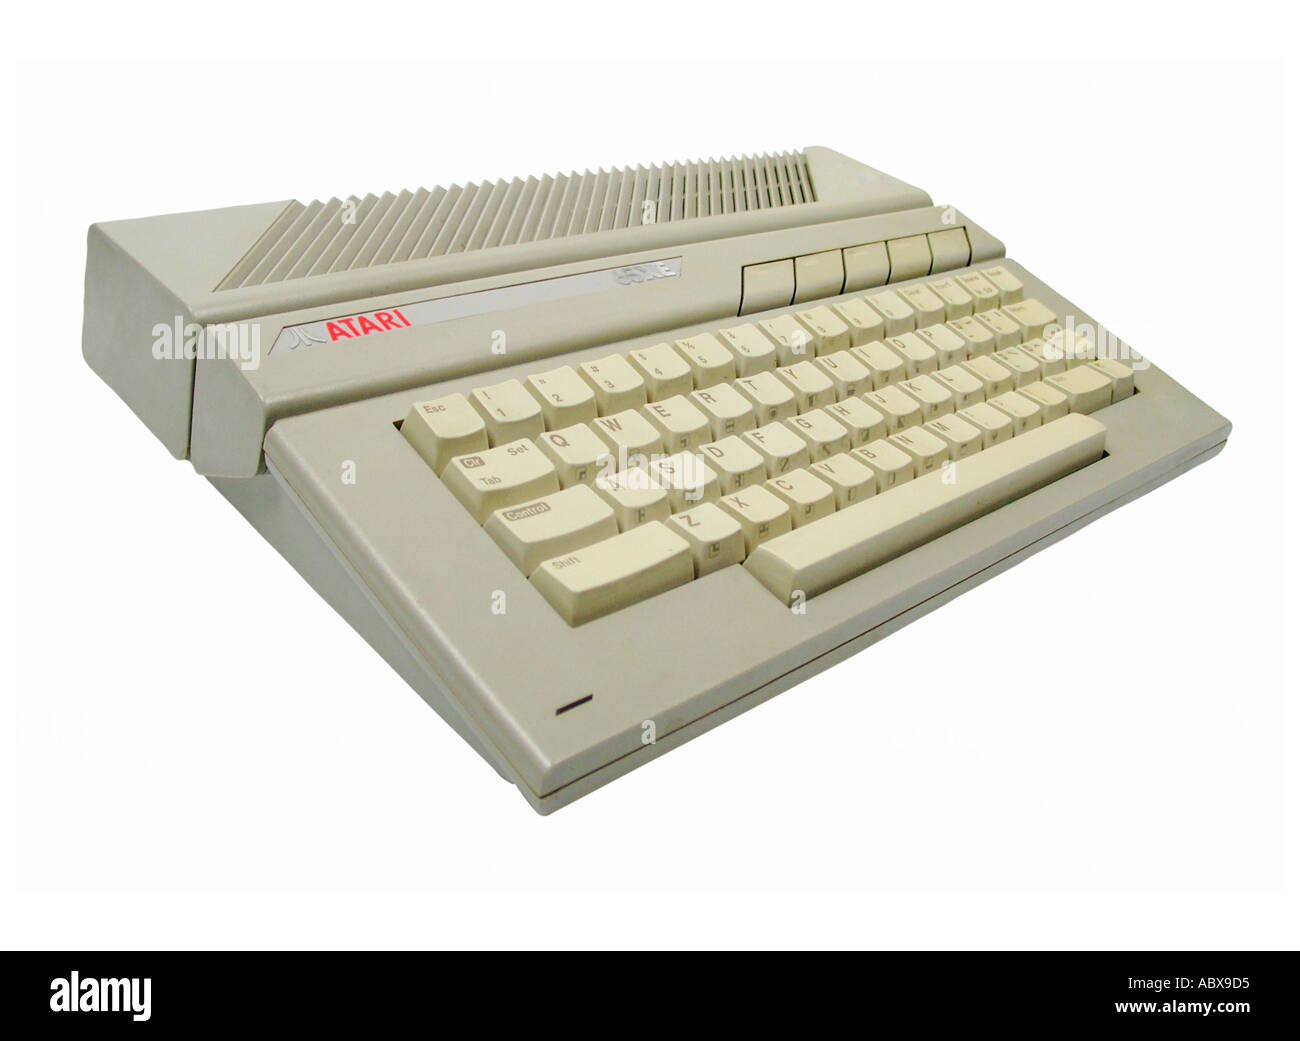 Atari 65 XE Home Computer Stock Photo